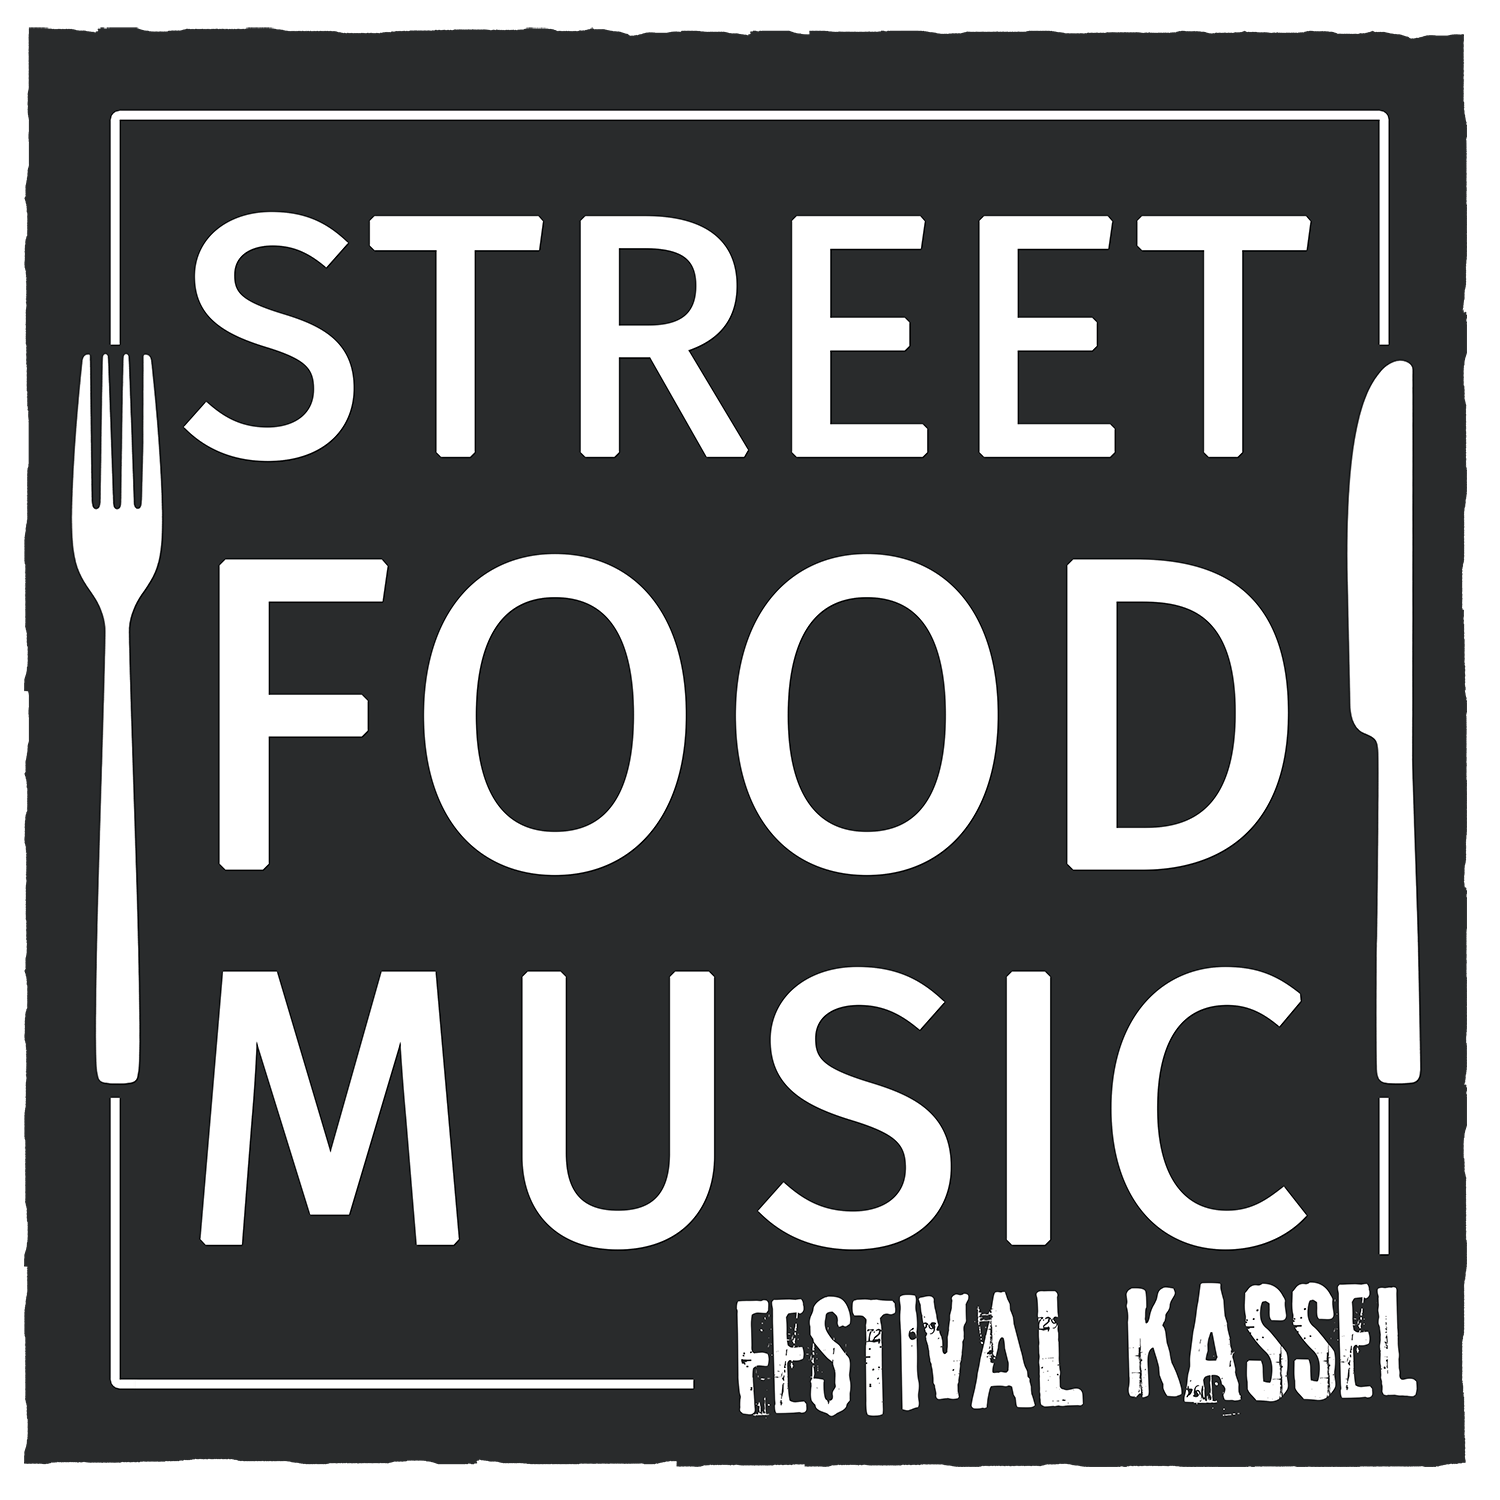 Street Food & Music Festival Kassel